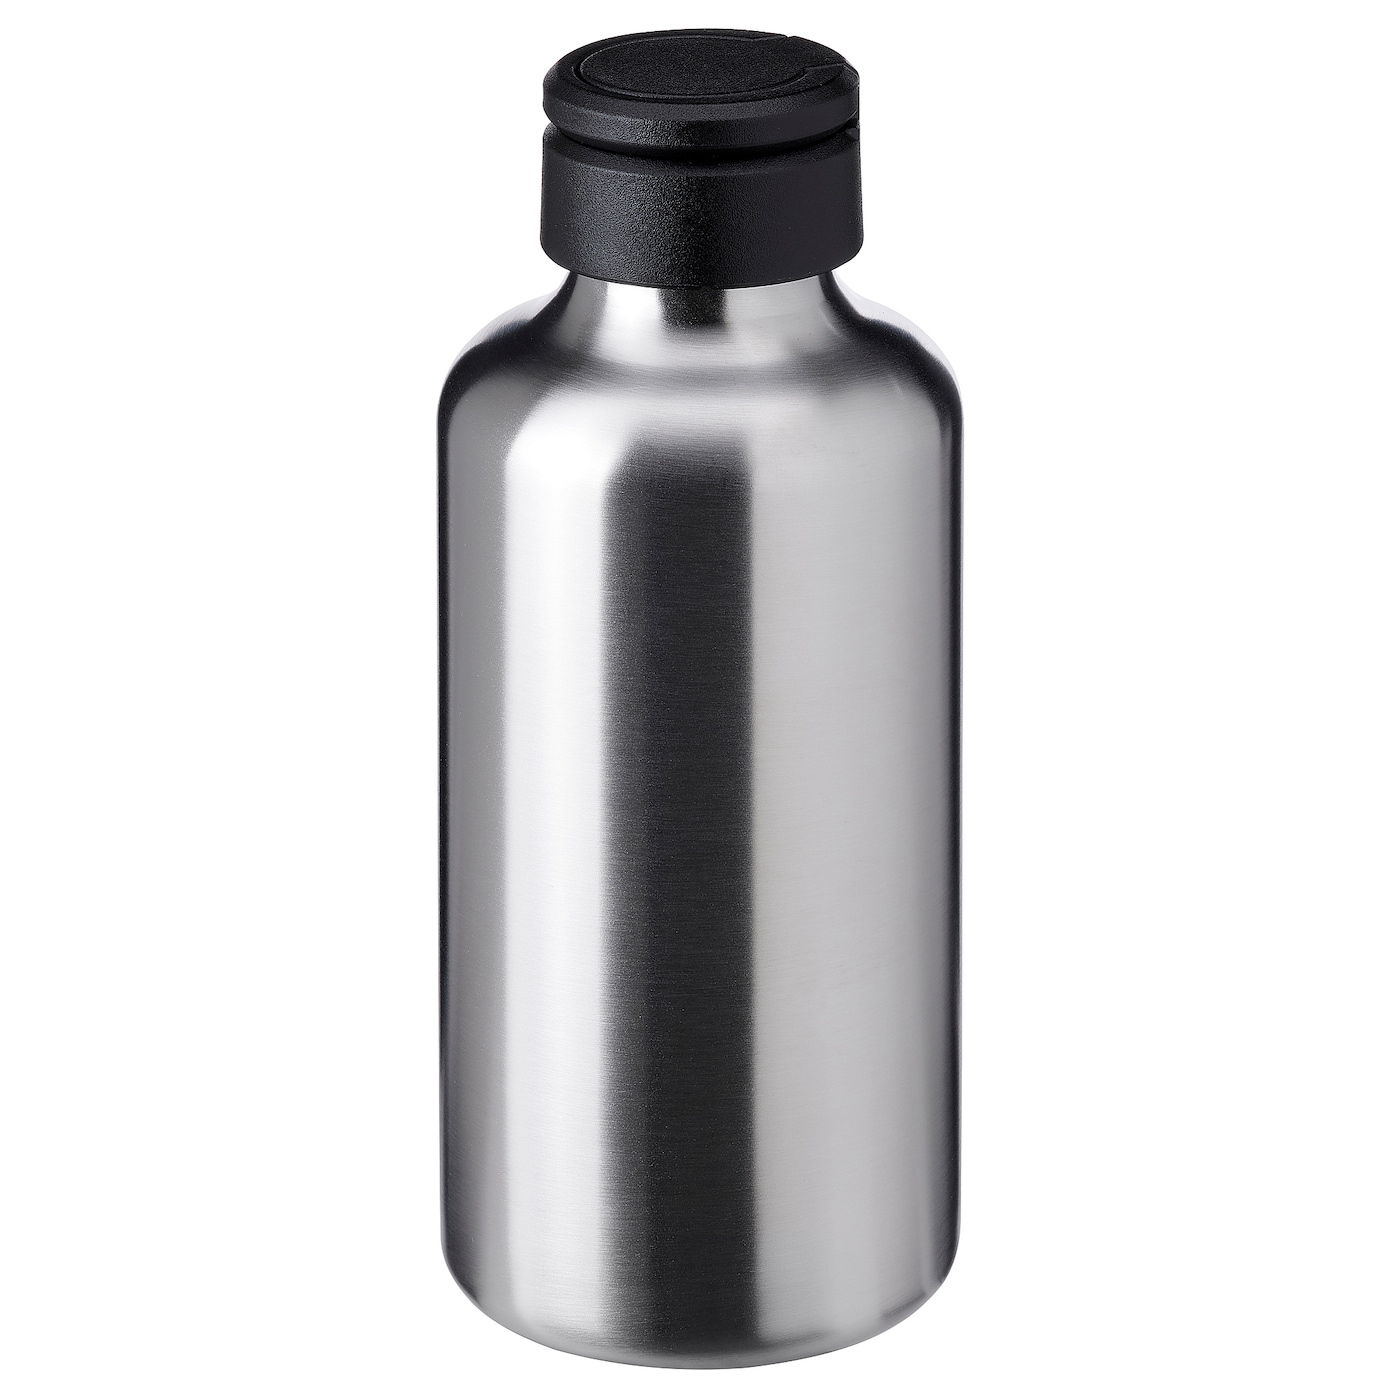 Бутылка с крышкой - IKEA ENKELSPÅRIG/ENKELSPARIG, 0.7 л, черный/нержавеющая сталь, ЭНКЕЛЬСПОРИГ ИКЕА